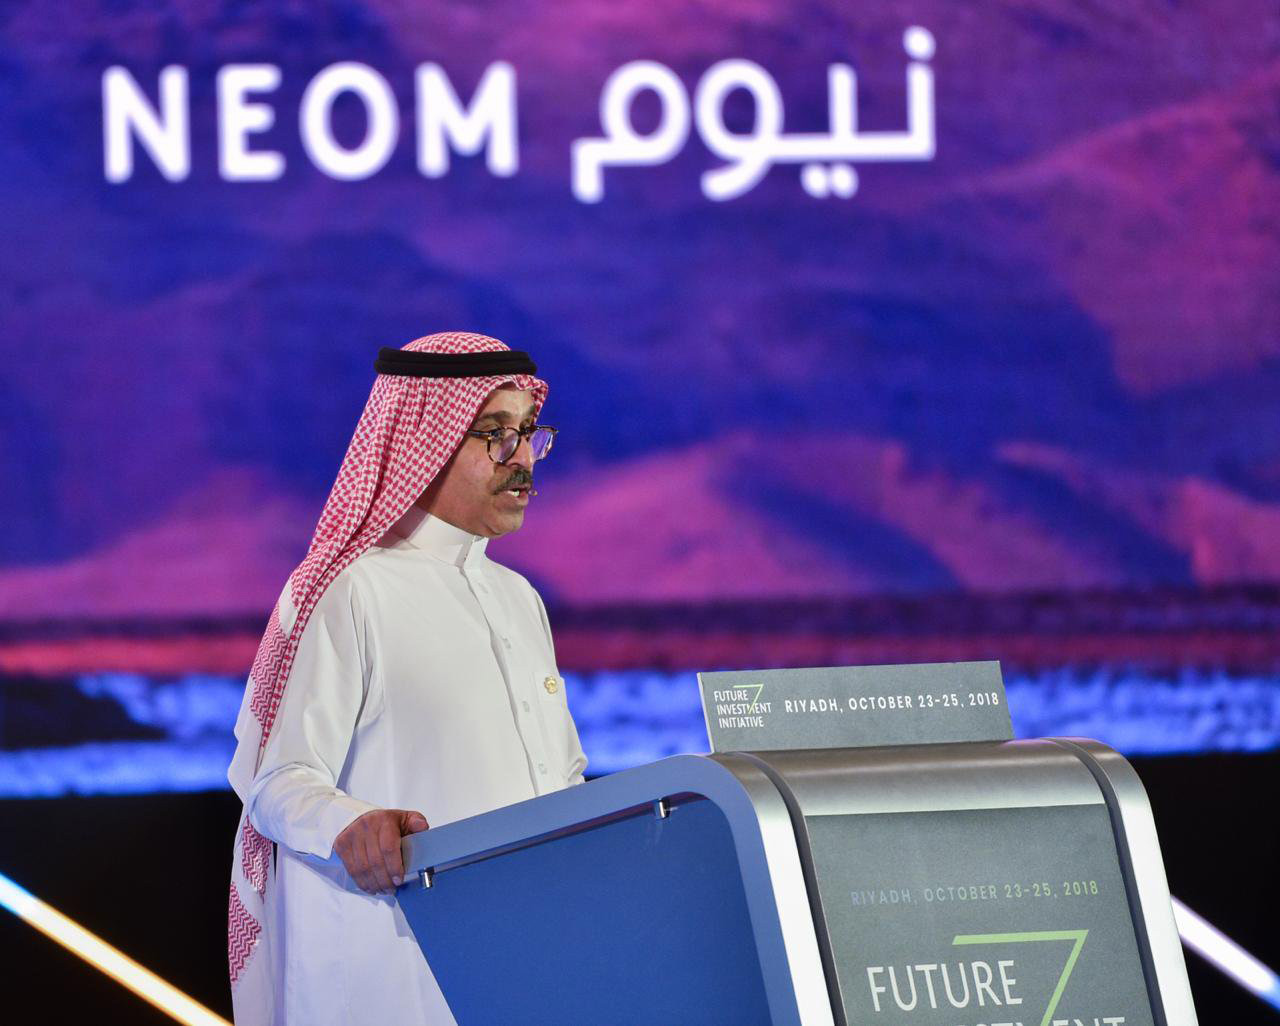 男子在讲台上讲话的图像，他身后有紫色的标志，用英语和阿拉伯语写着NEOM